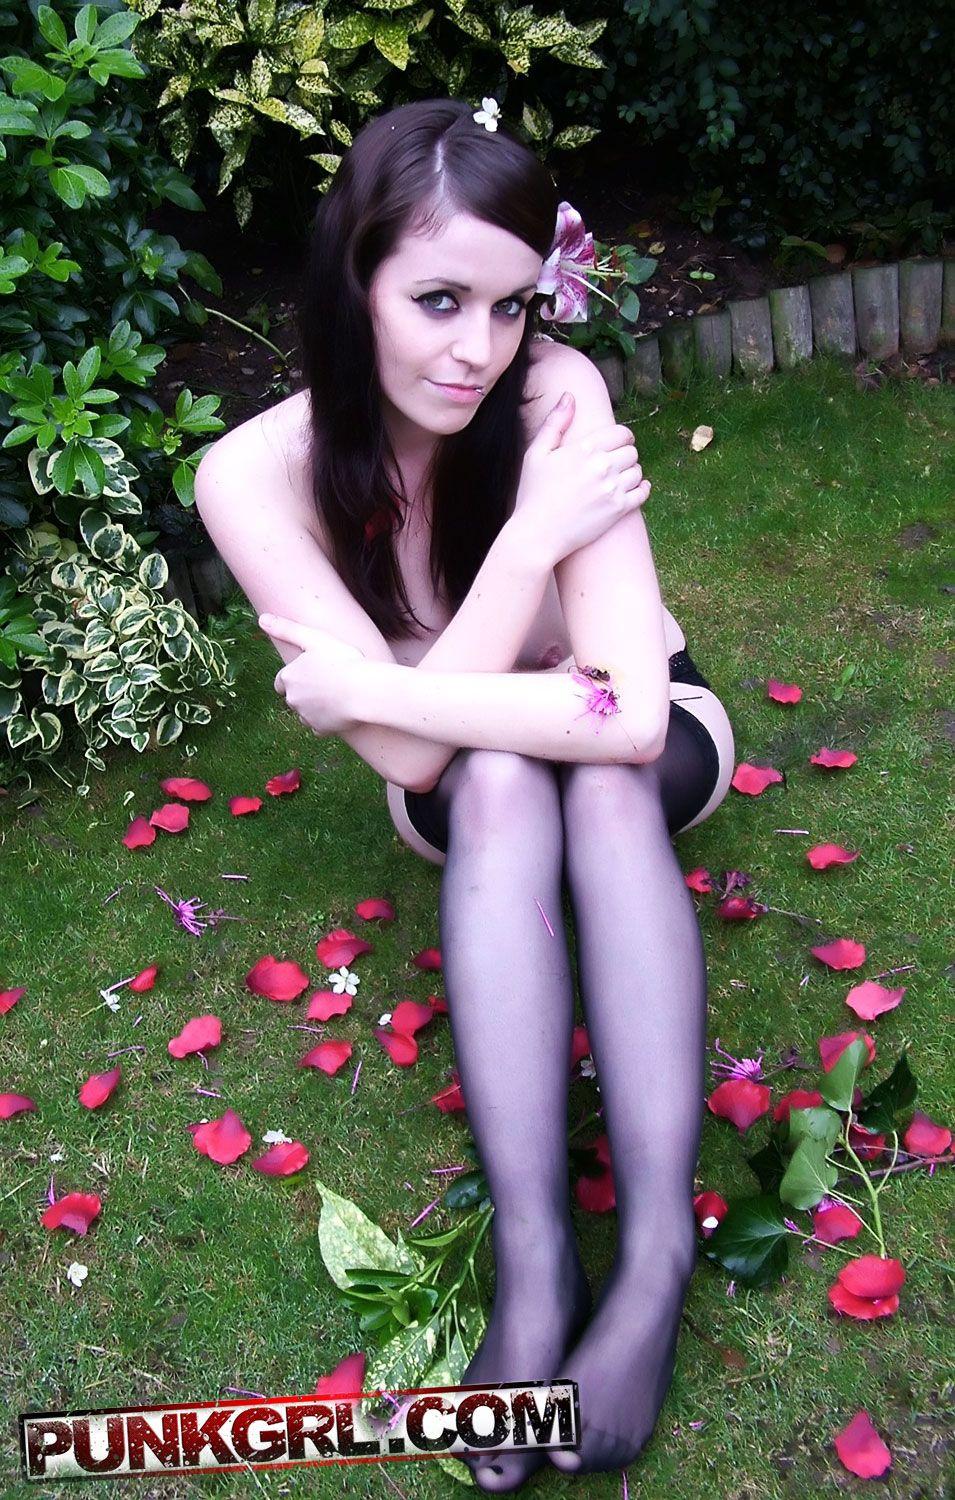 Fotos de la joven punk betty mostrando su belleza en el jardin
 #60764201